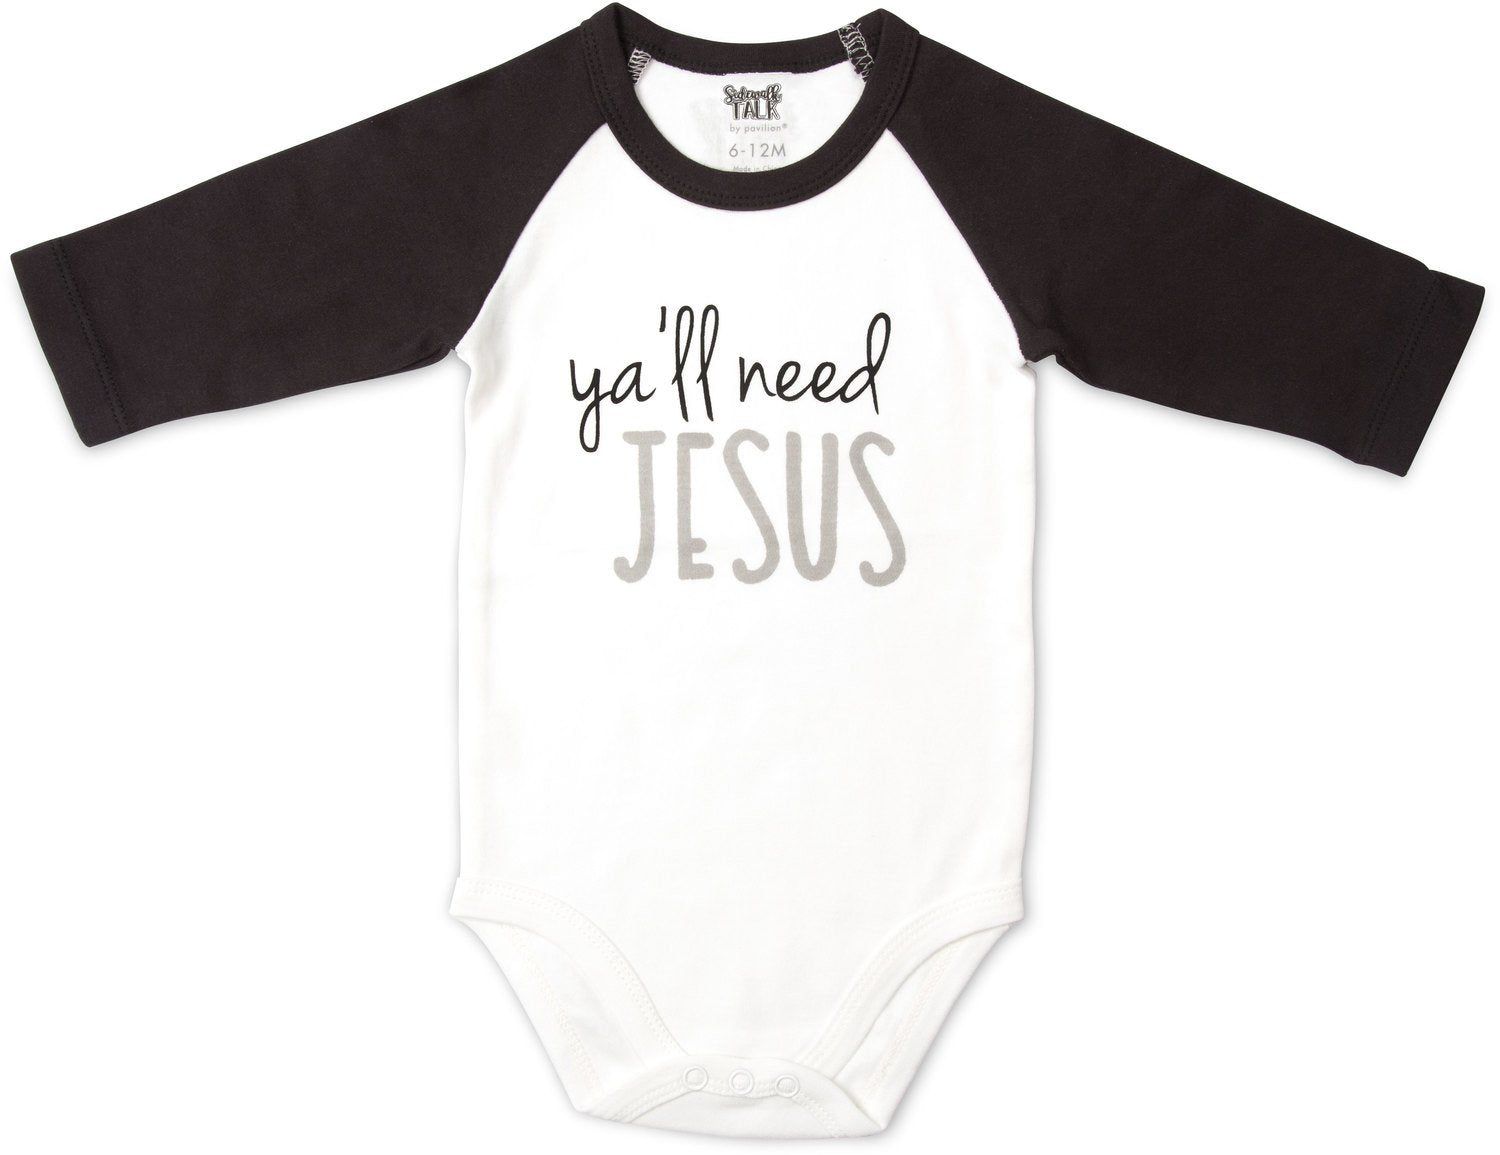 Ya'll Need Jesus 3/4 Sleeve Baby Onesie Baby Onesie Sidewalk Talk - GigglesGear.com